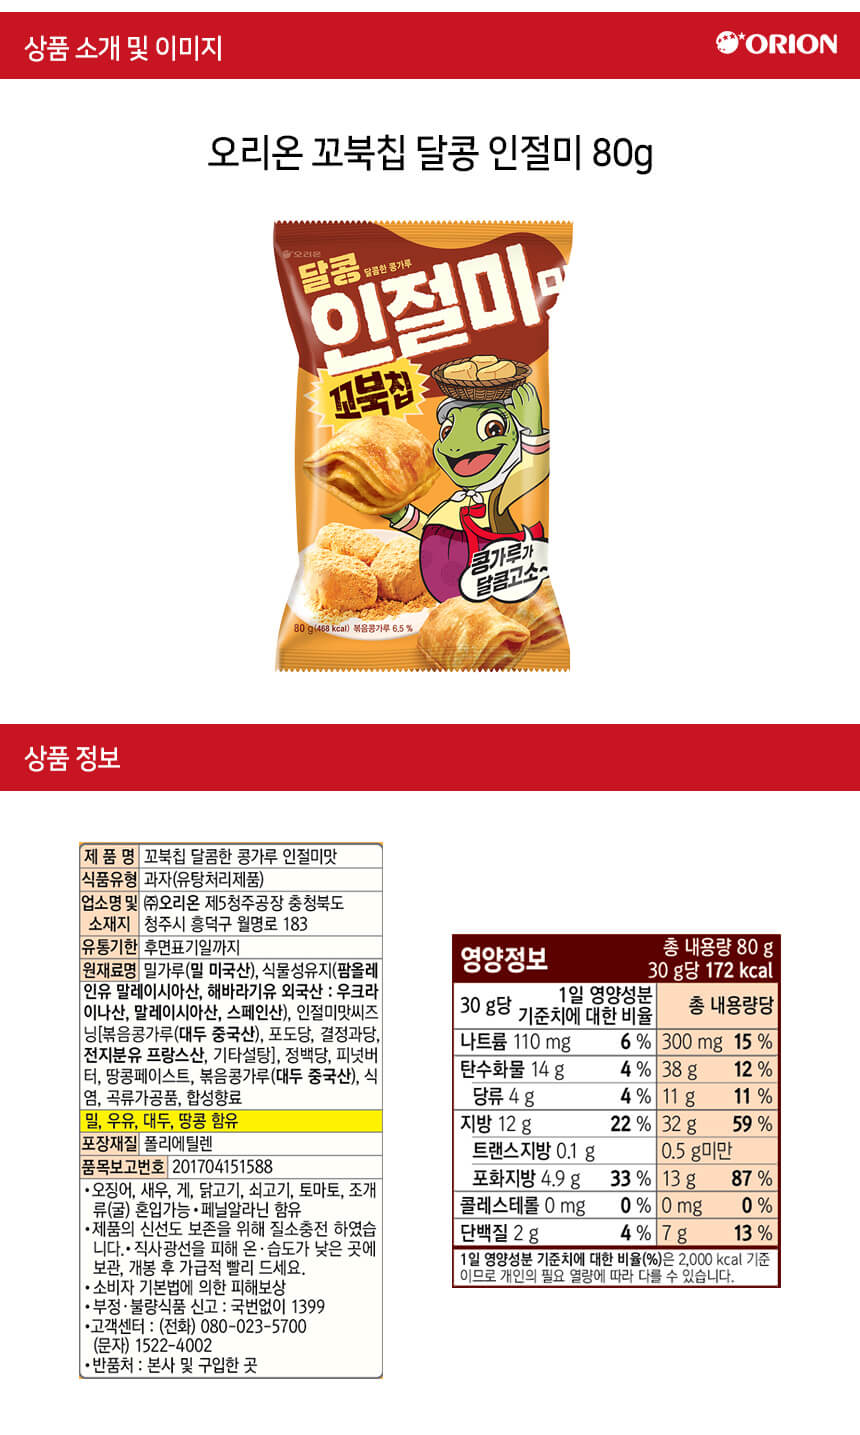 韓國食品-오리온 꼬북칩[인절미] 65g